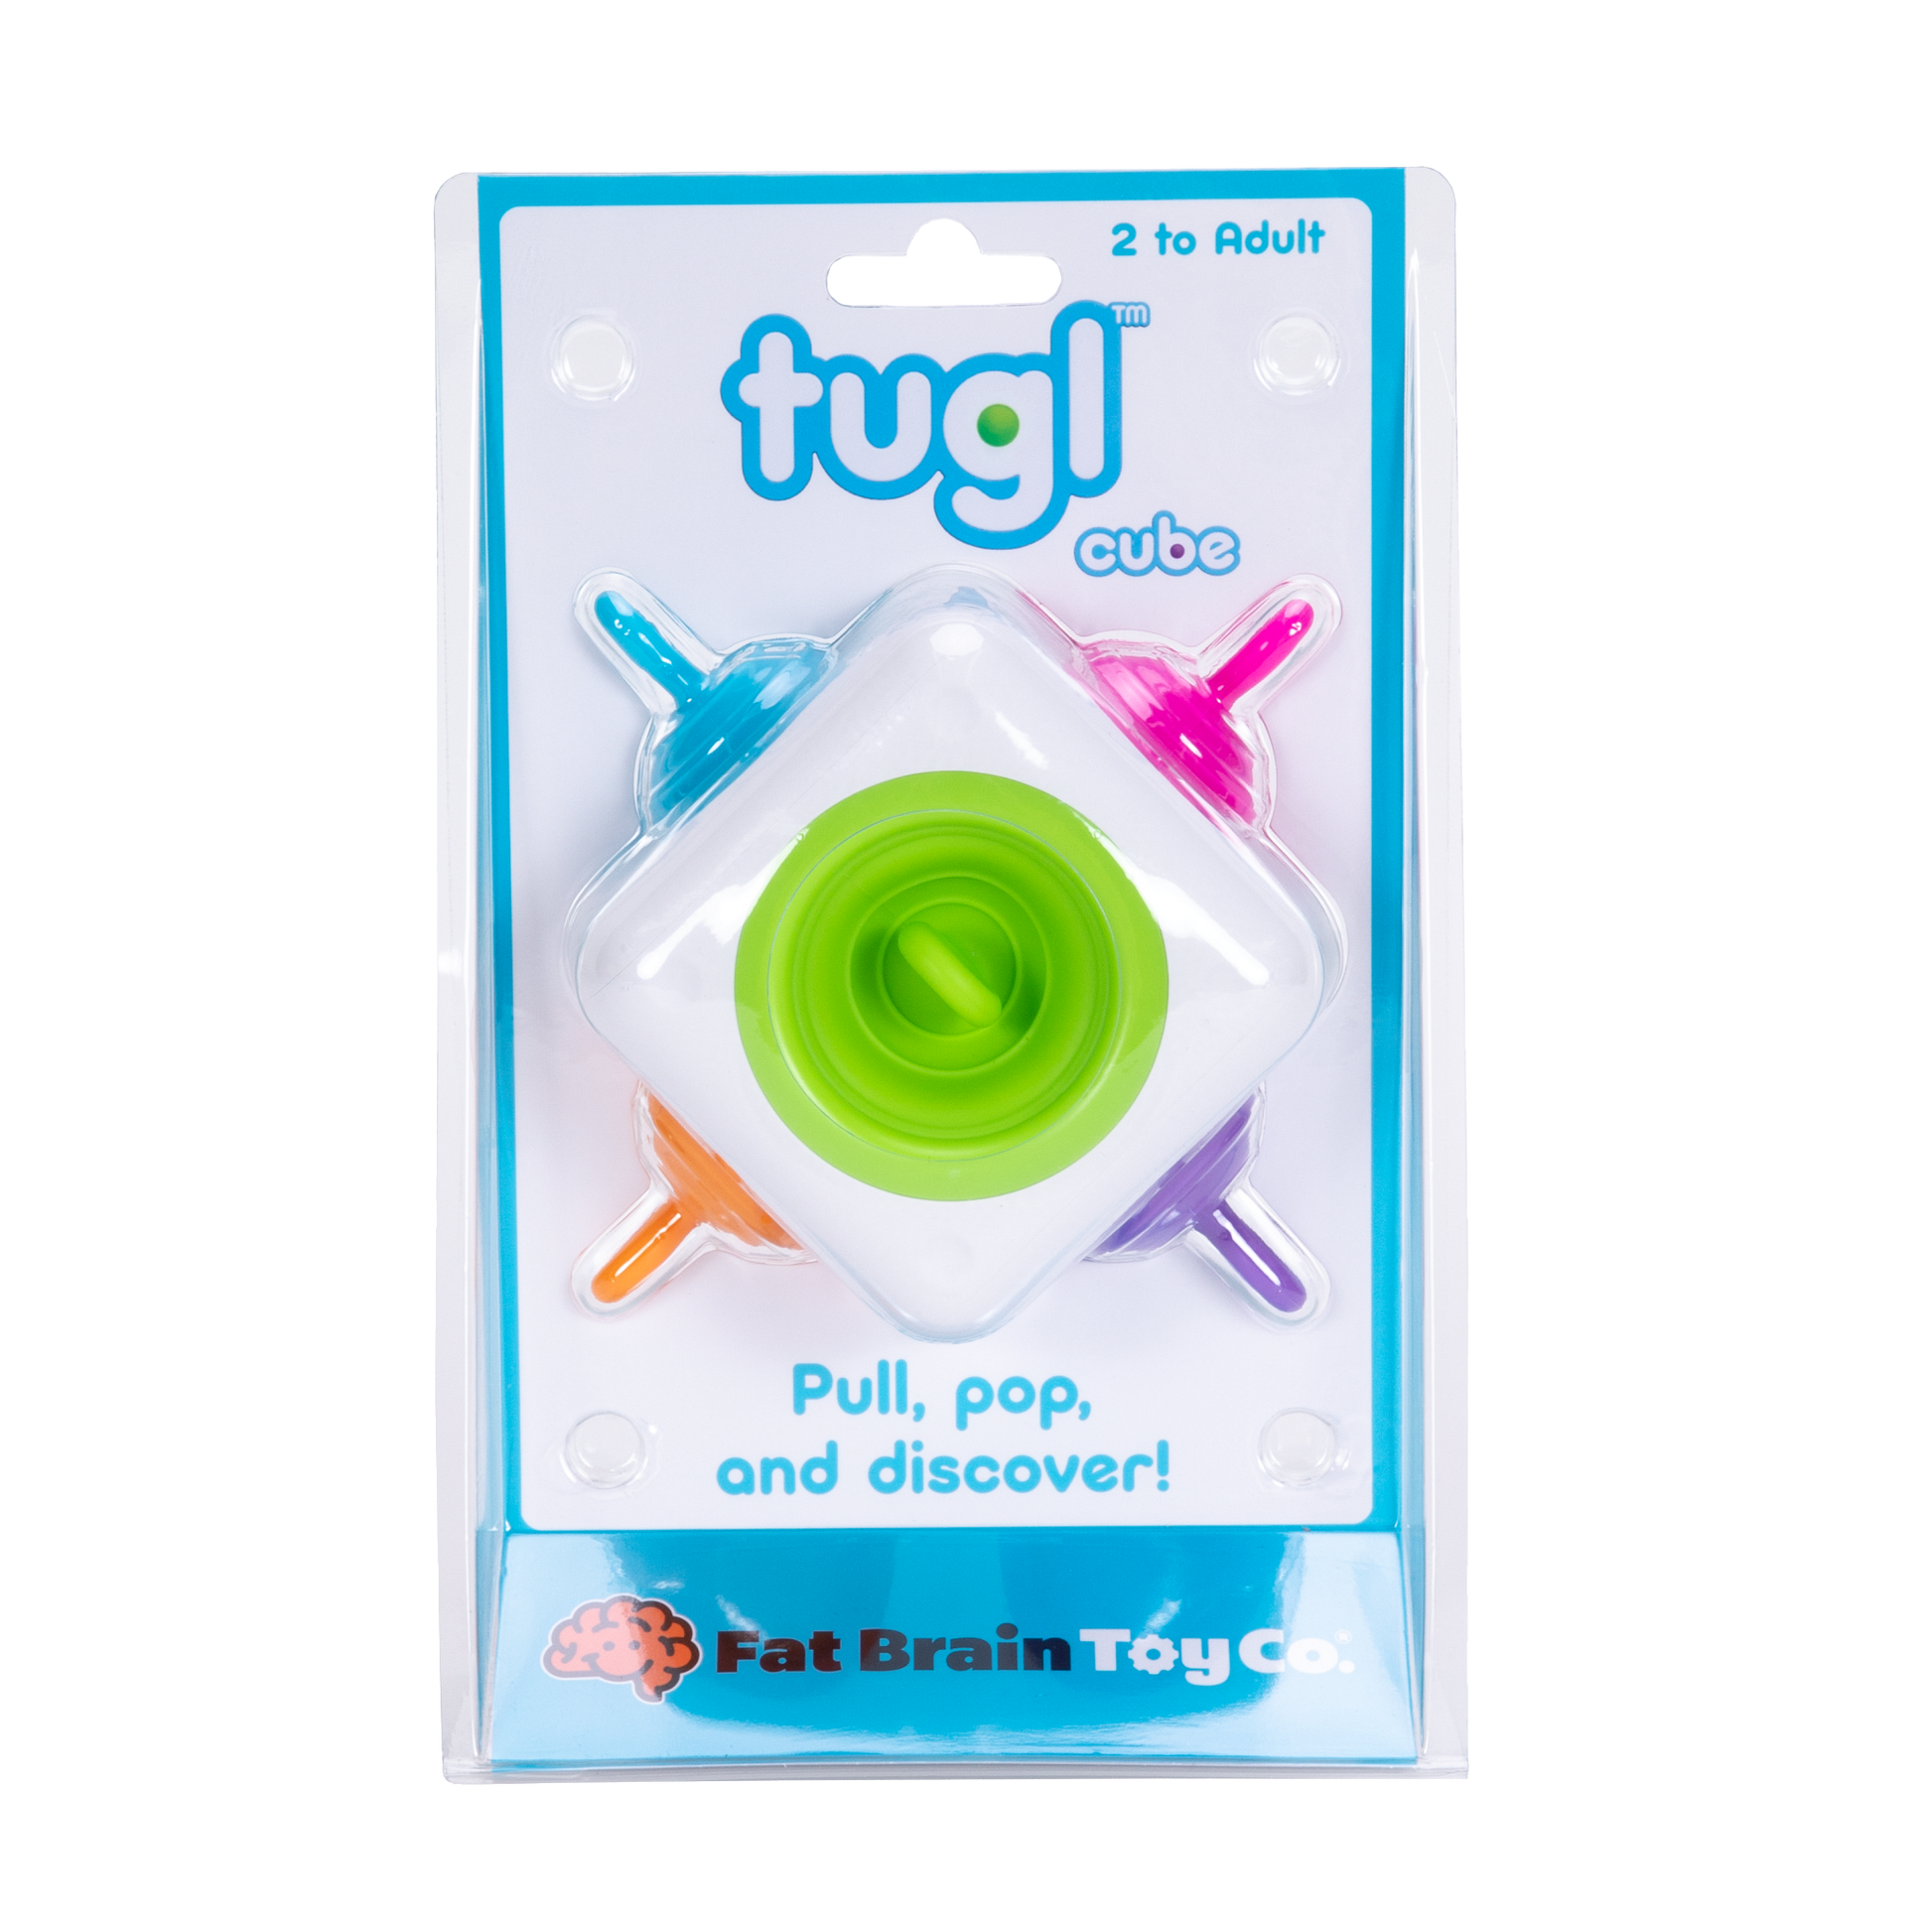 Tugl Cube